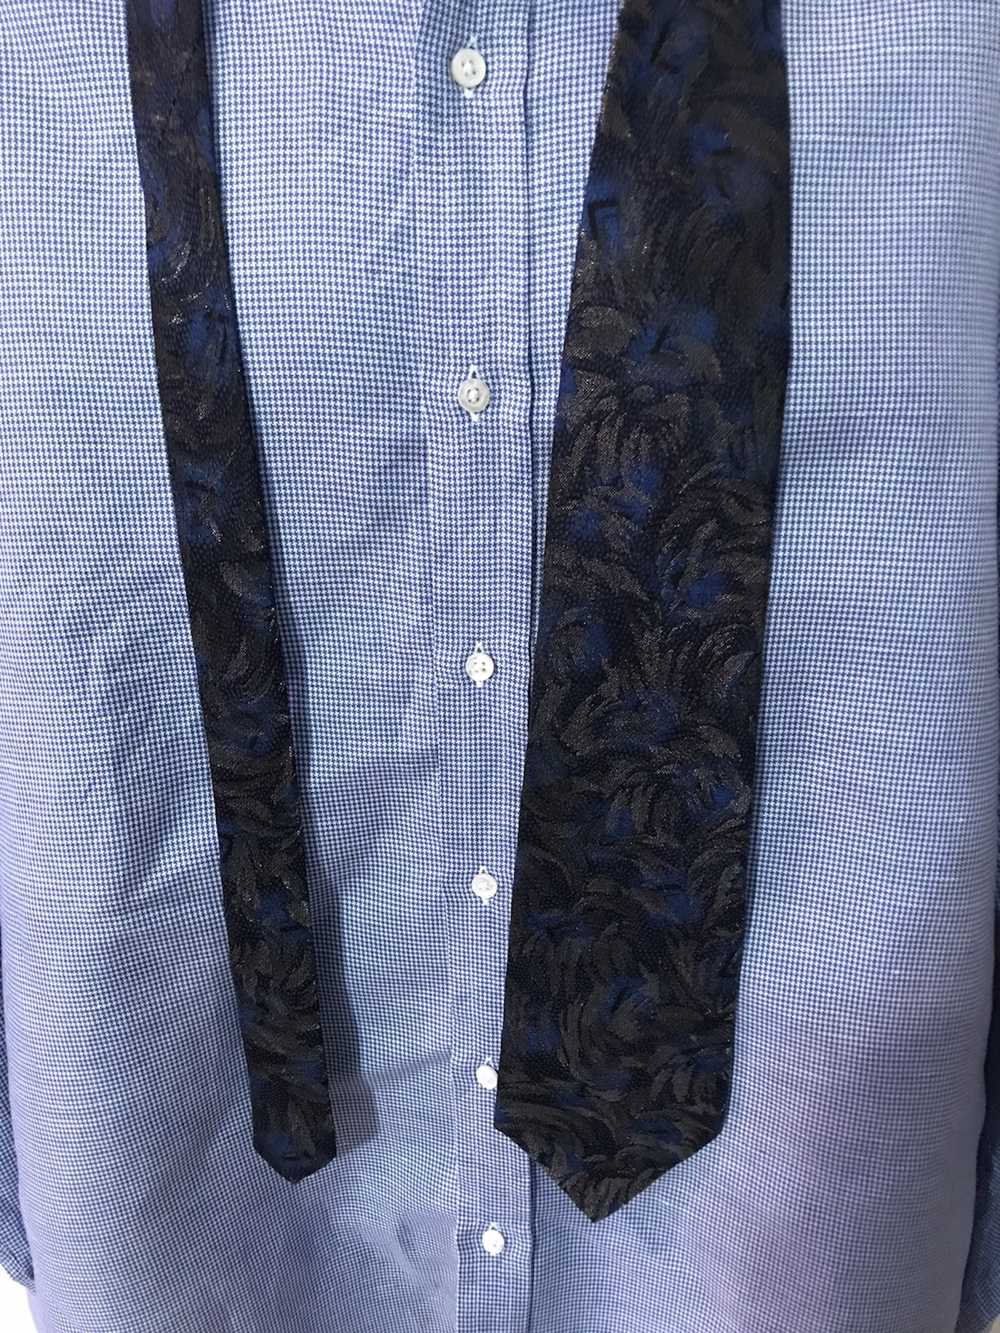 Fendi Floral shimmer silk tie (Royal,Grey, Black) - image 1